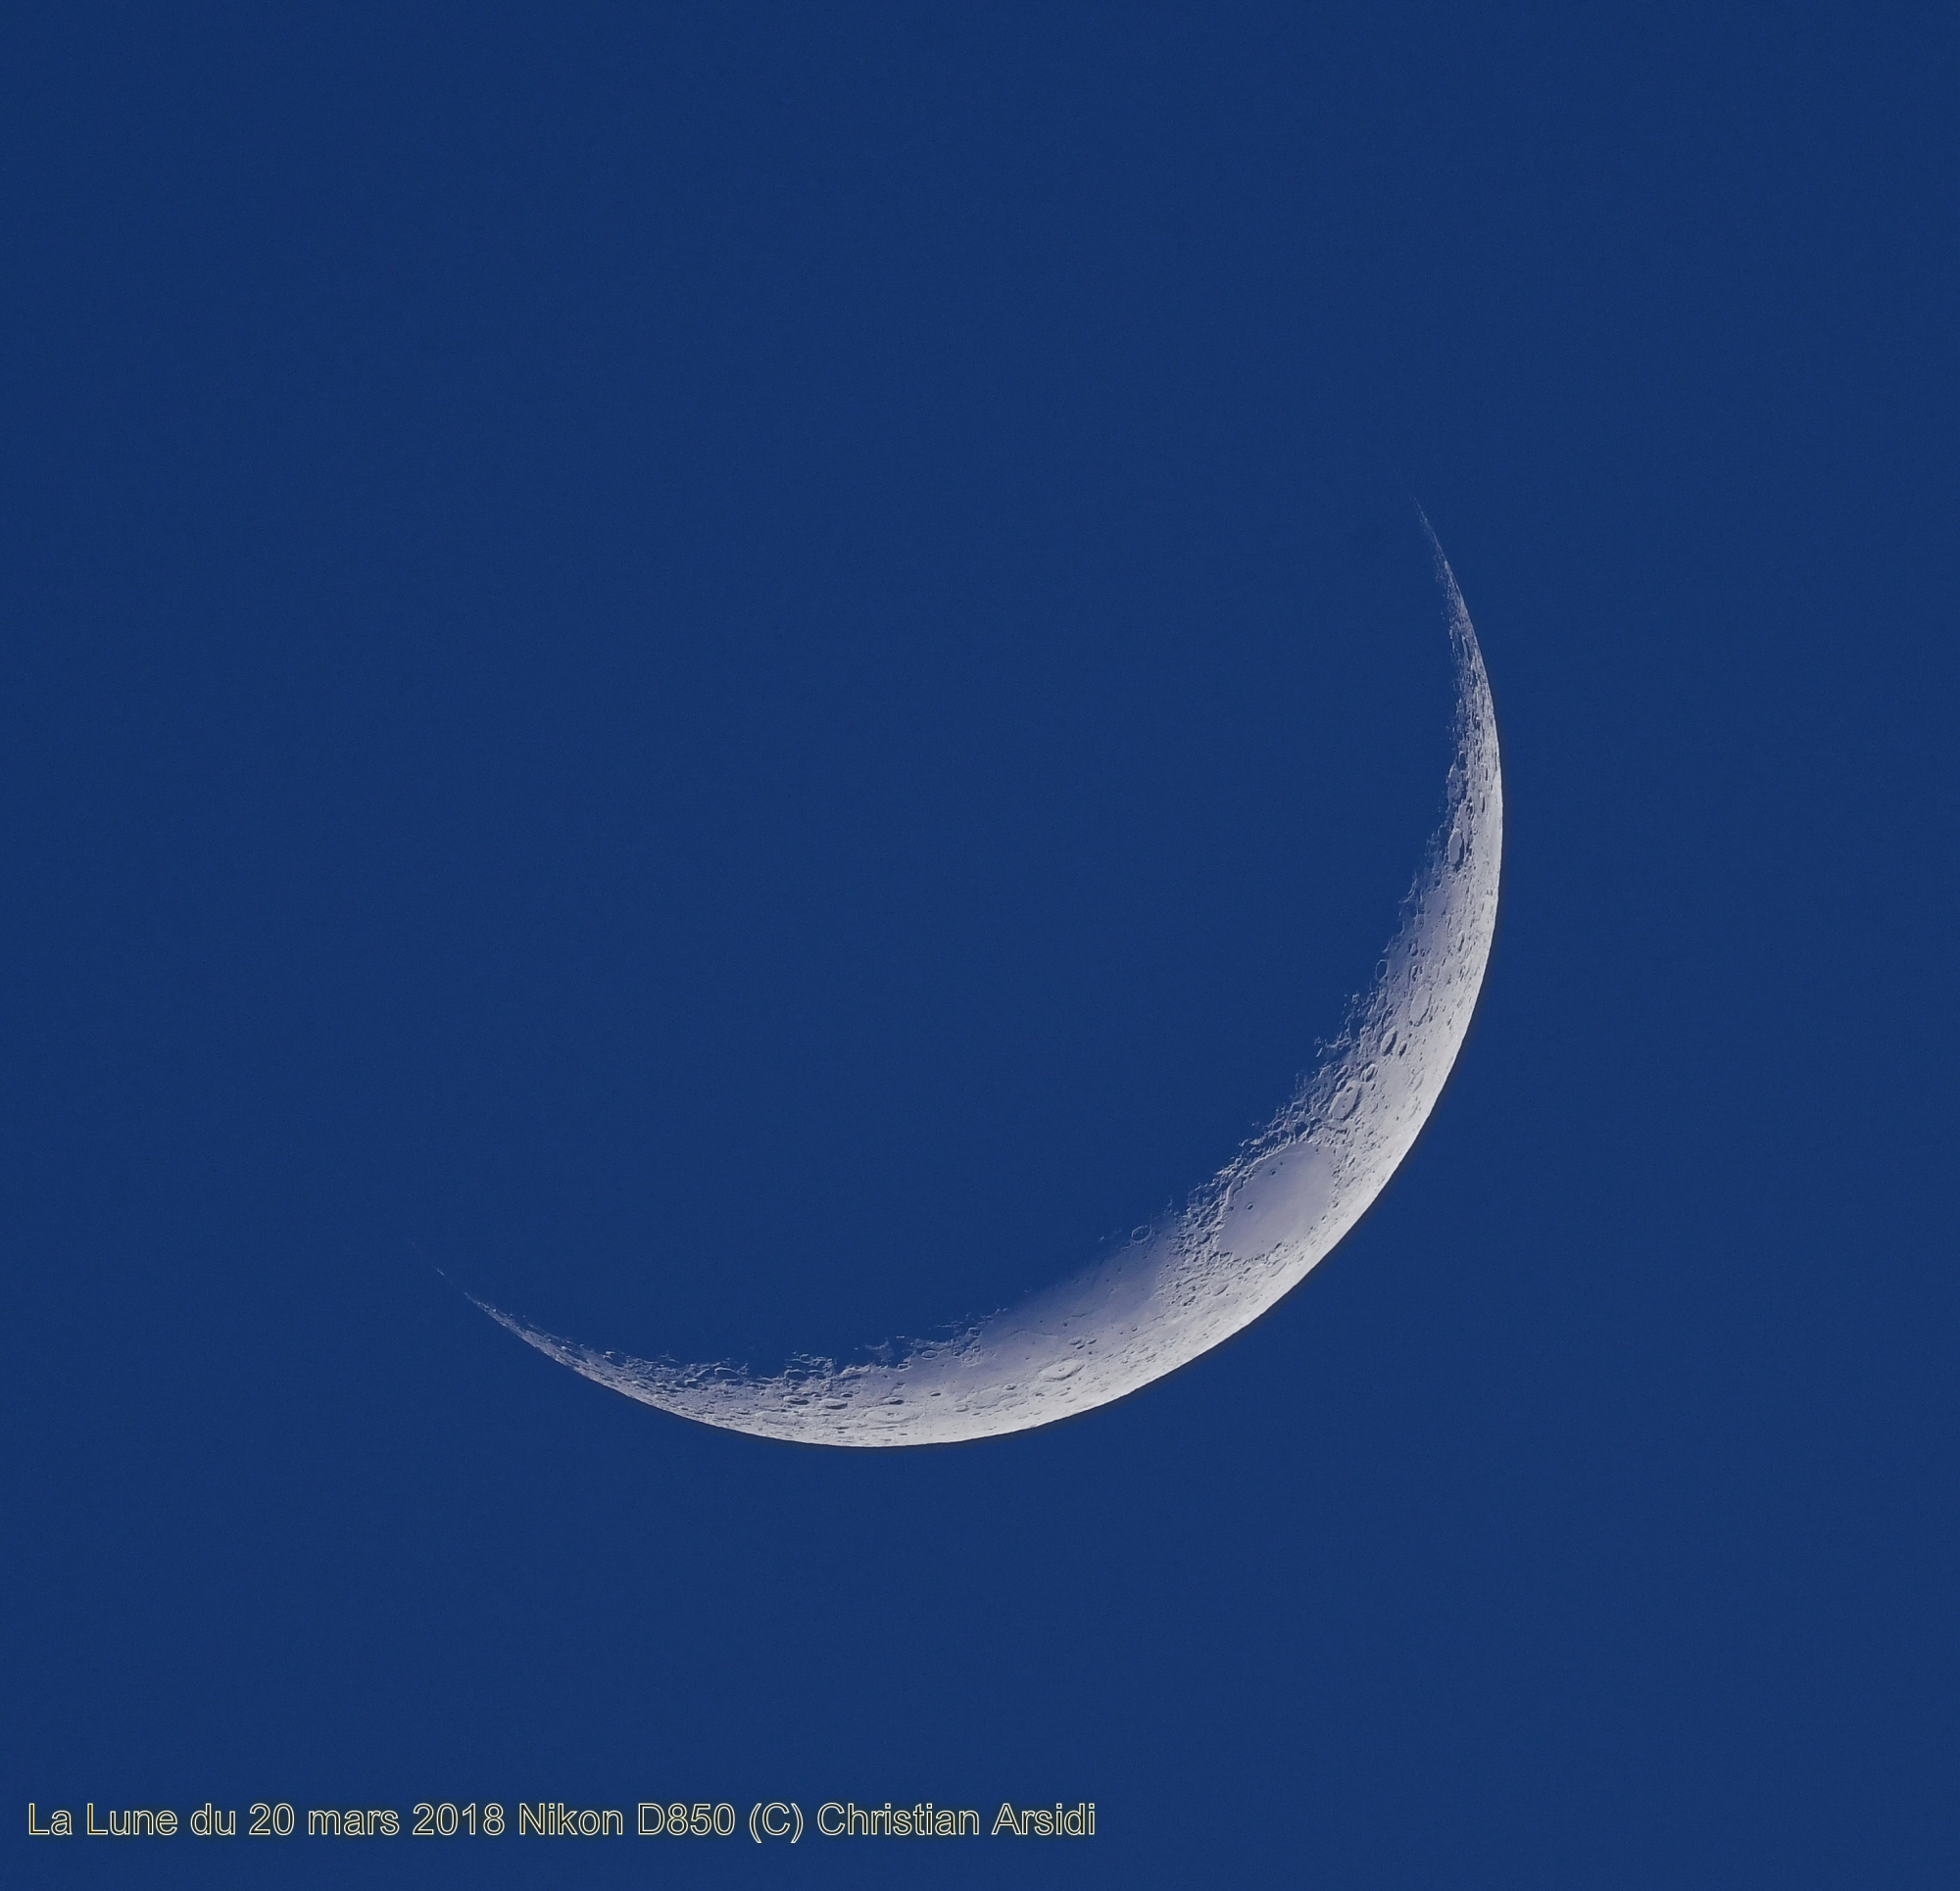 La Lune en mode touriste JPEG V2.jpg